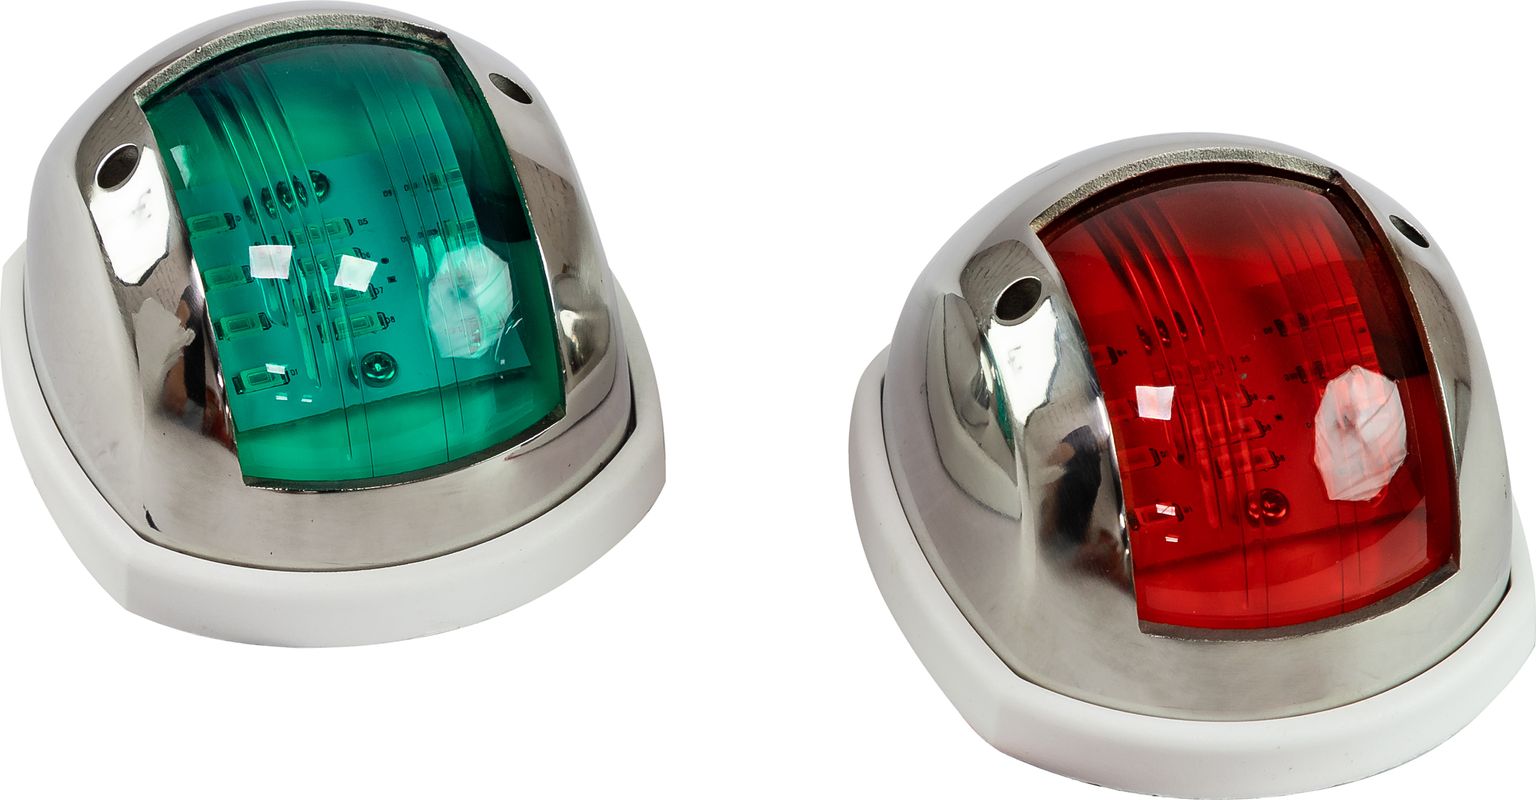 Огни ходовые 89х55 мм комплект (красный, зеленый), LED, нержавеющий корпус LPSDLPTLED0289 огни ходовые нержавеющий корпус комплект 00199